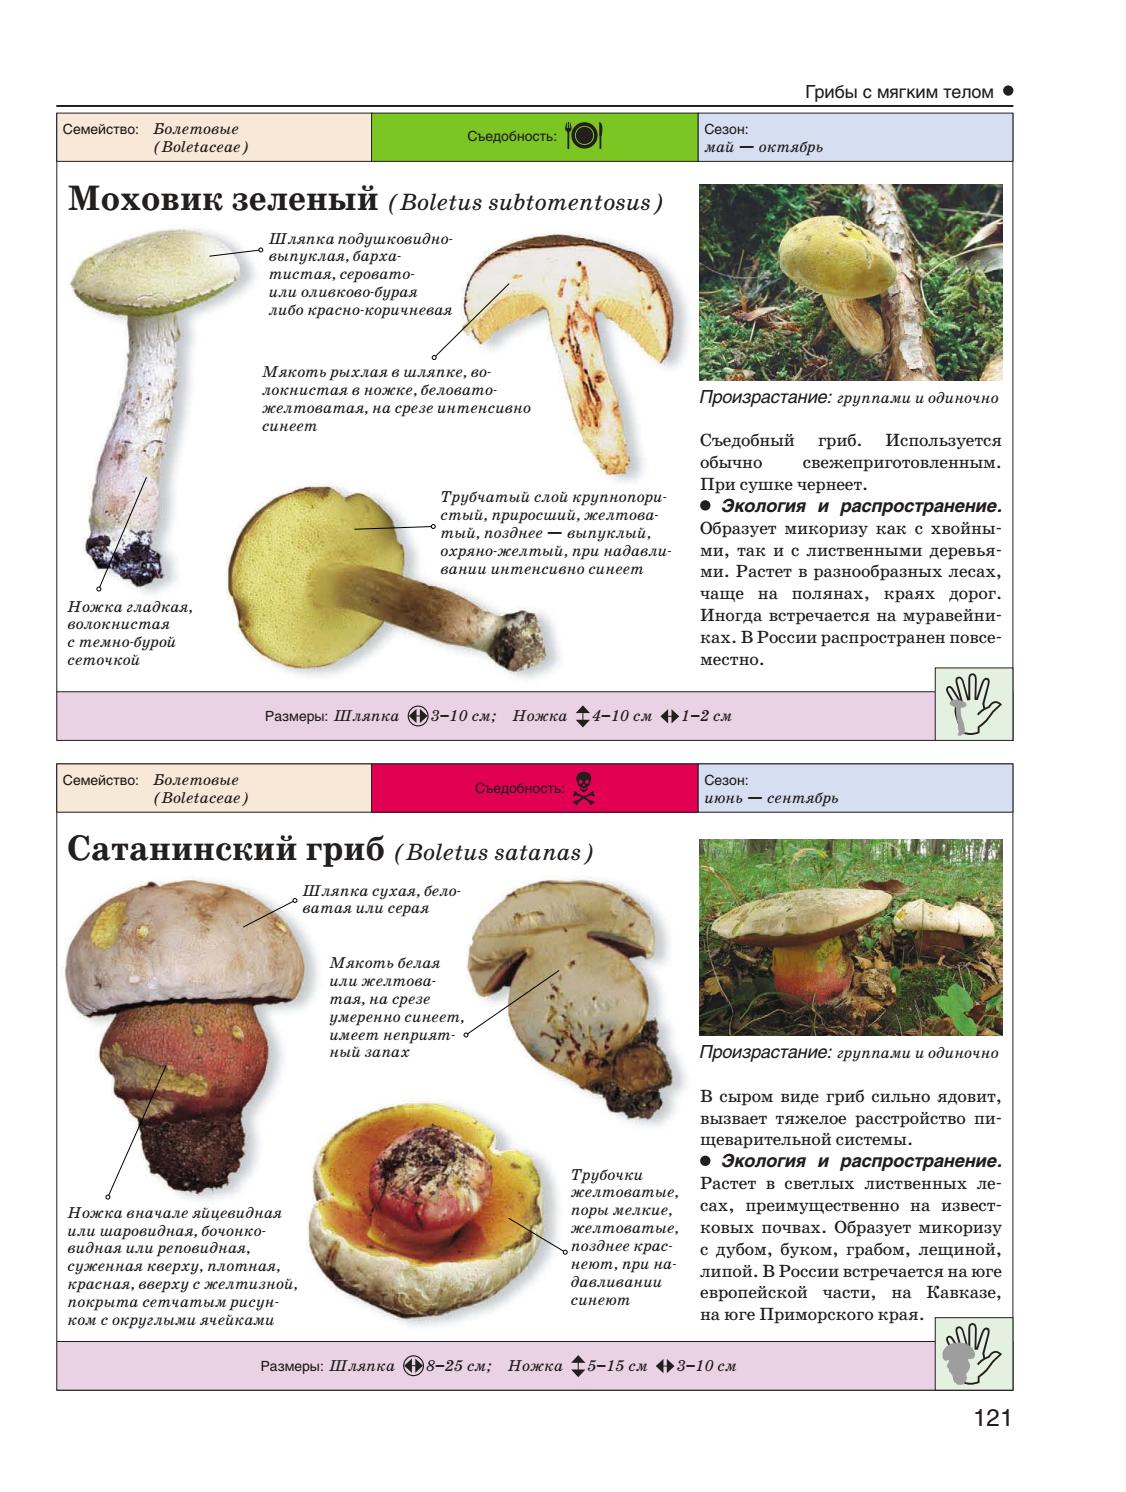 Пластинчатые грибы - примеры съедобных и ядовитых грибов, фото с названиями и описанием